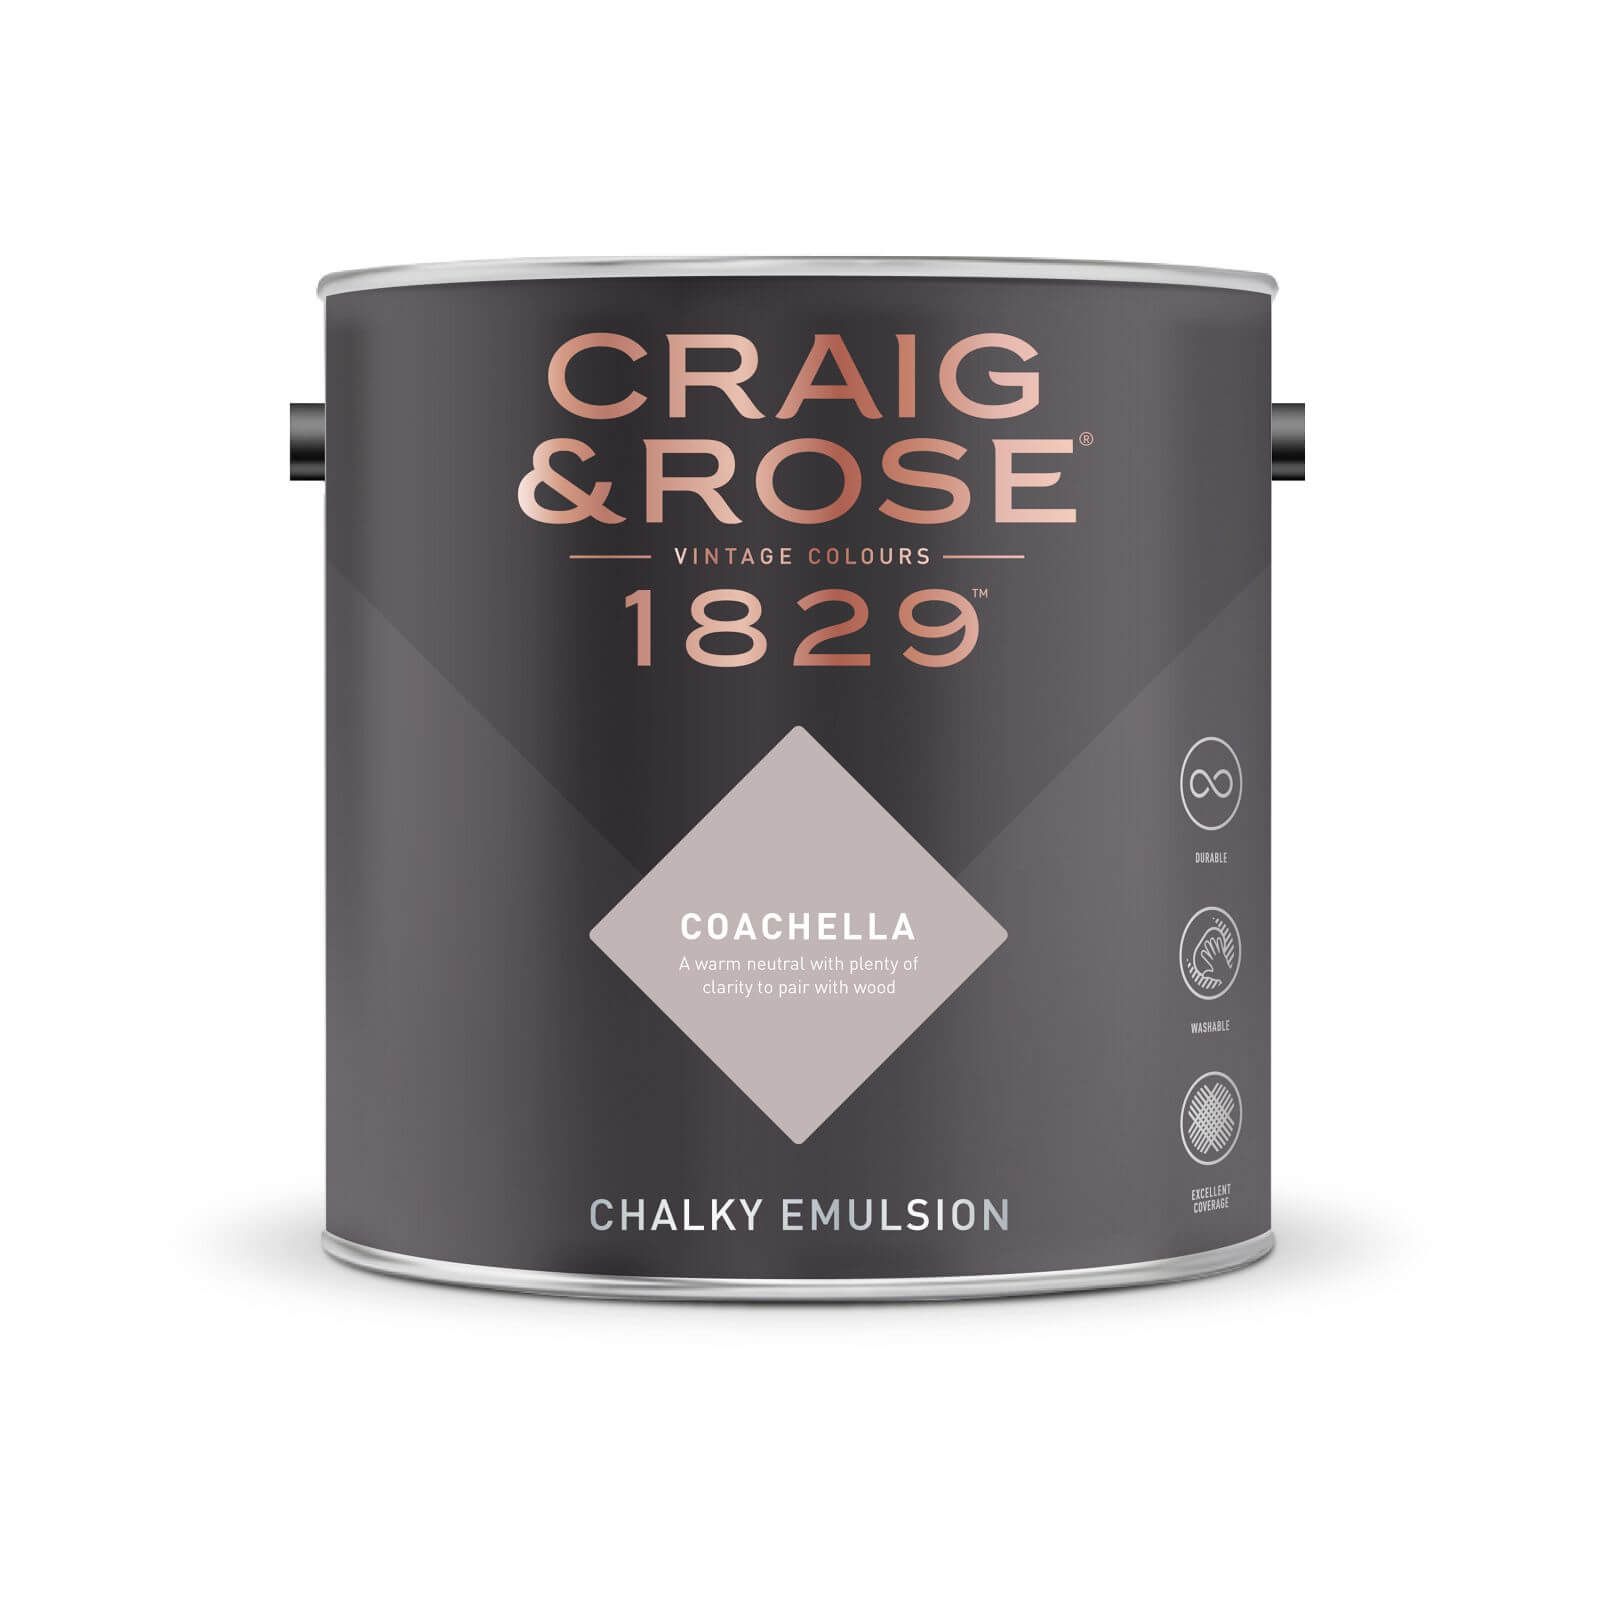 Craig & Rose 1829 Chalky Emulsion Paint Coachella - 2.5L